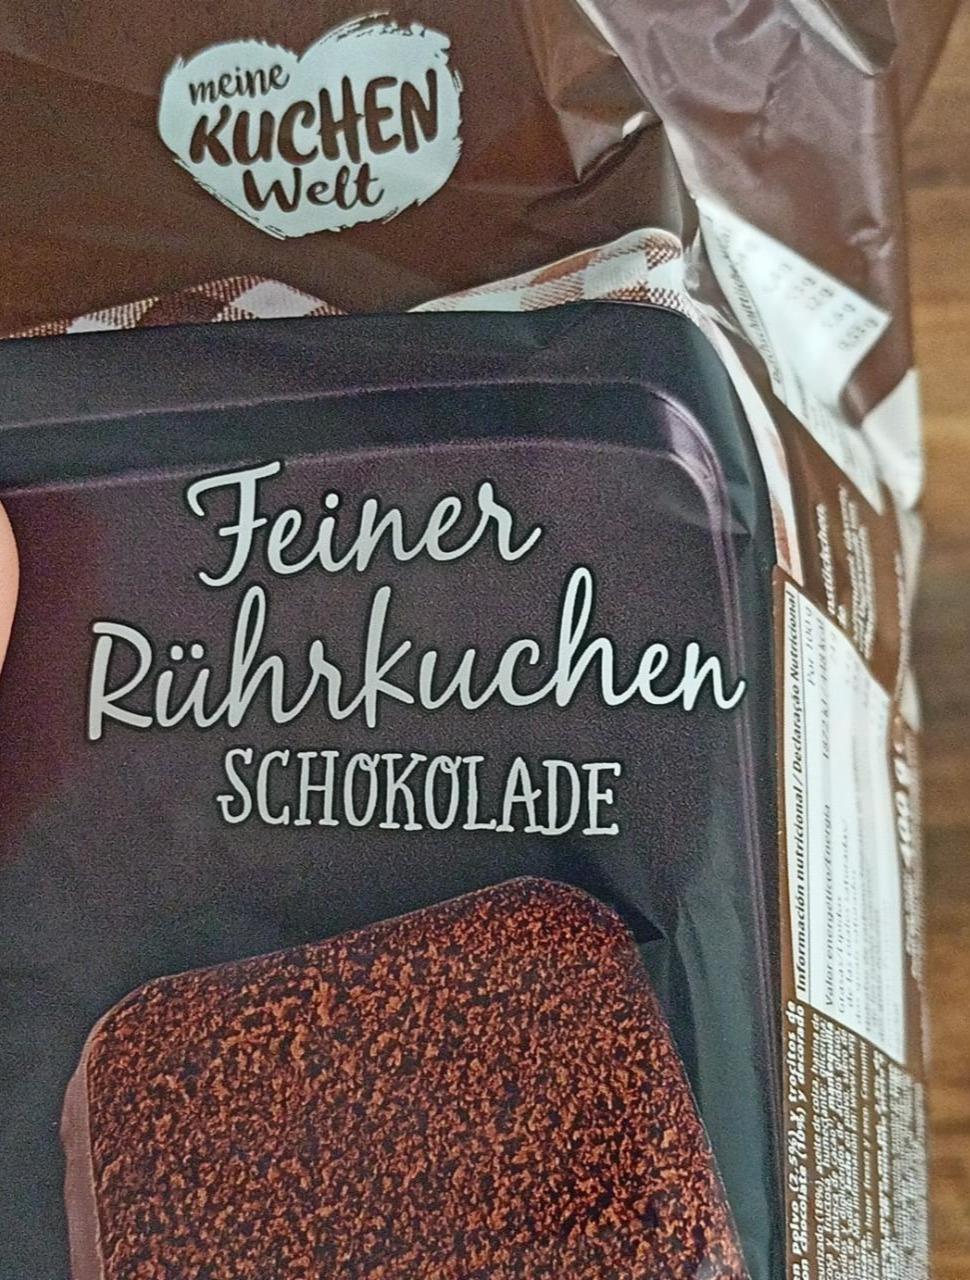 Fotografie - Feiner Rührkuchen Schokolade Meine kuchen welt